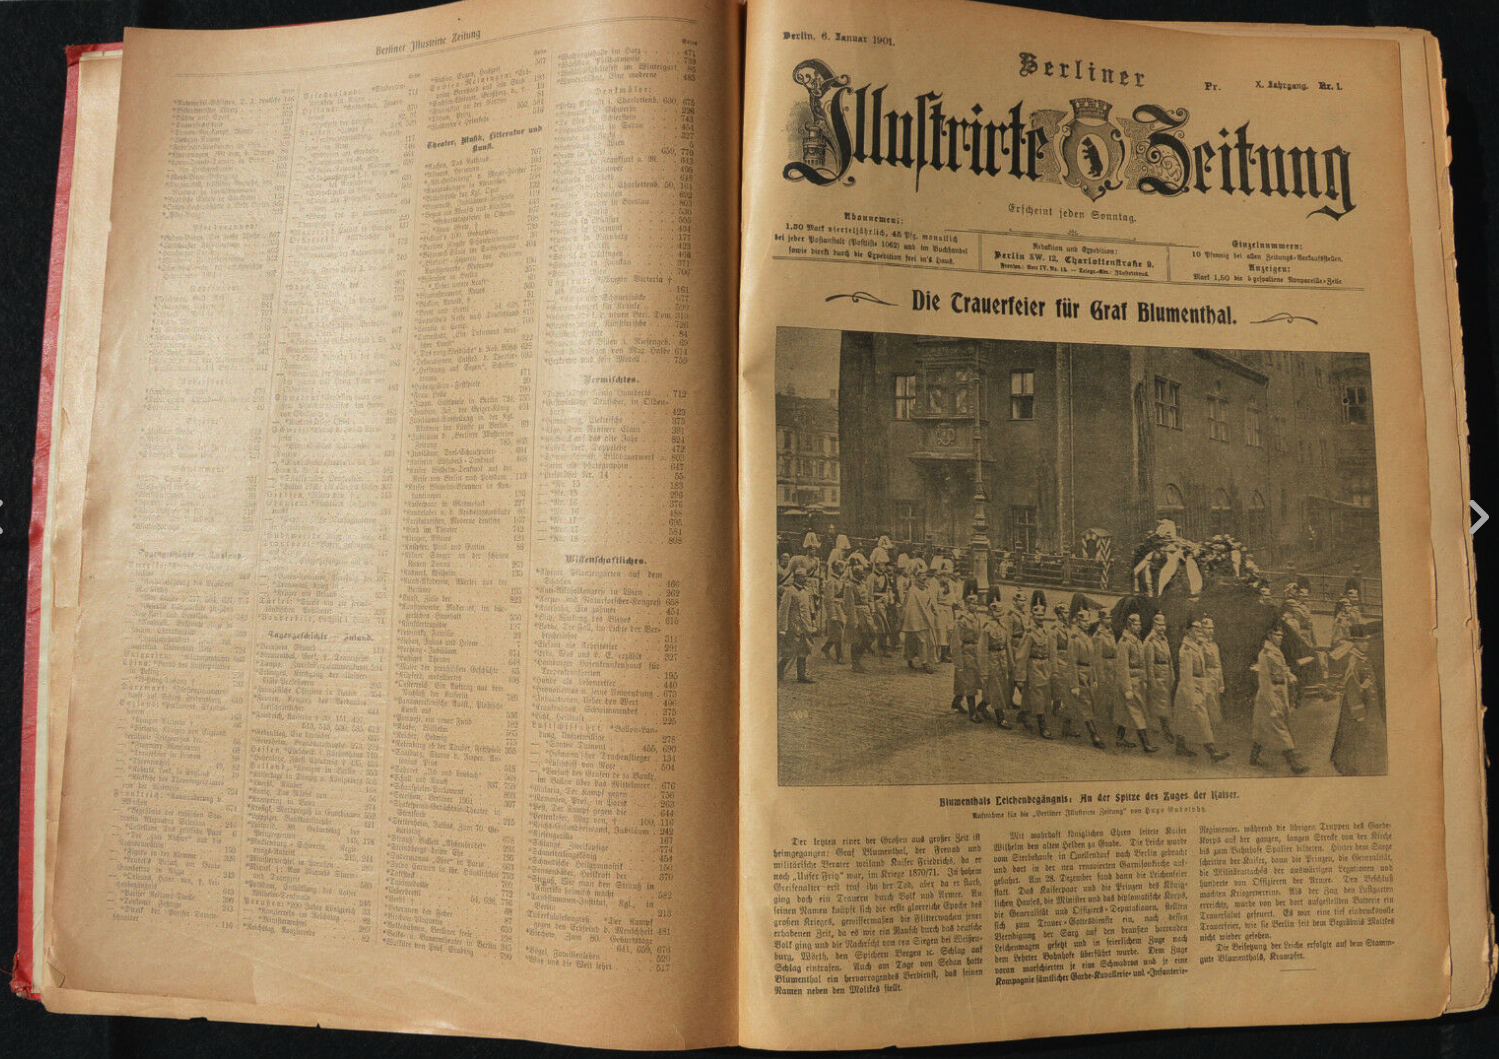 First issue of the Berliner Illustrirte Zeitung.